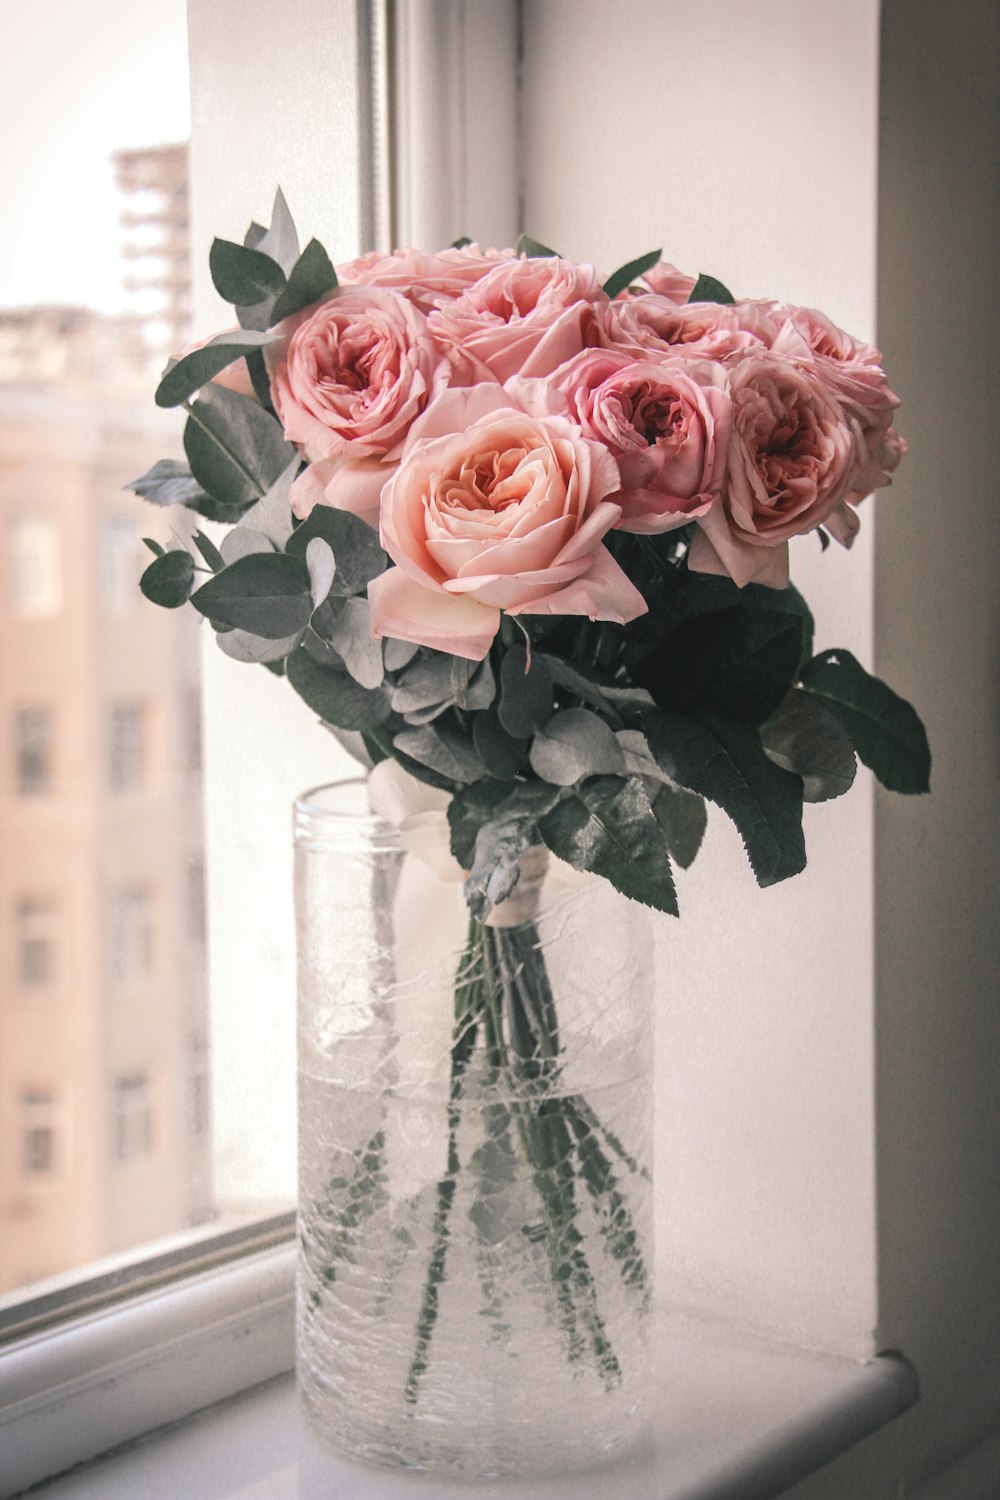 rosas cor-de-rosa no vaso de vidro transparente